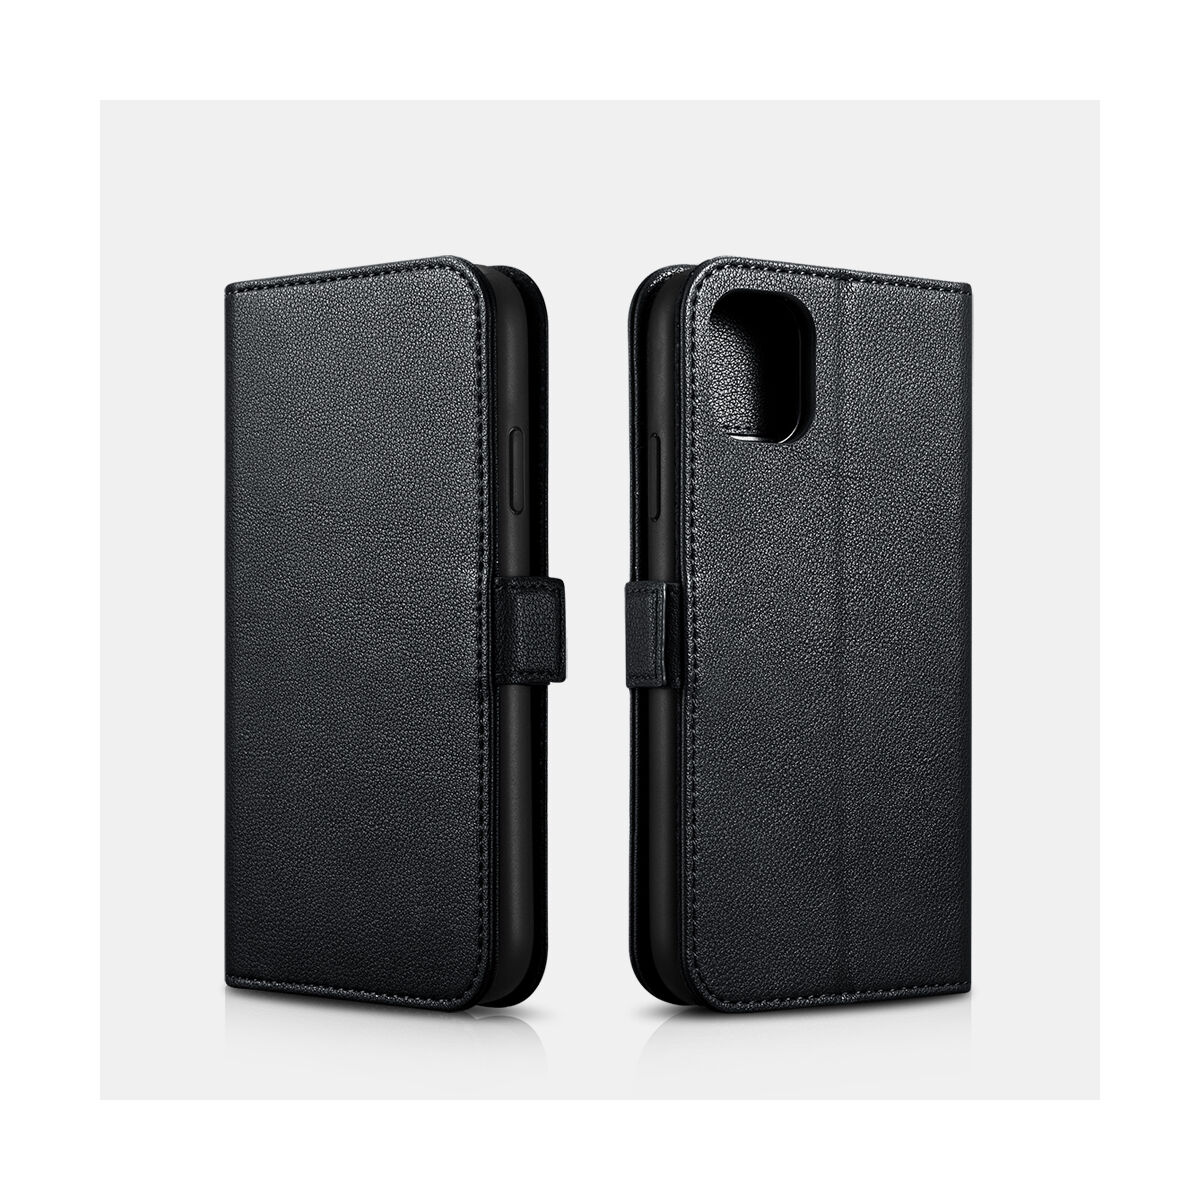 Kép 1/2 - iCarer iPhone 11 Pro Max tok, Nappa Bőr Levehető 2-in-1 pénztárcatok, levehető kártyatartóval, fekete